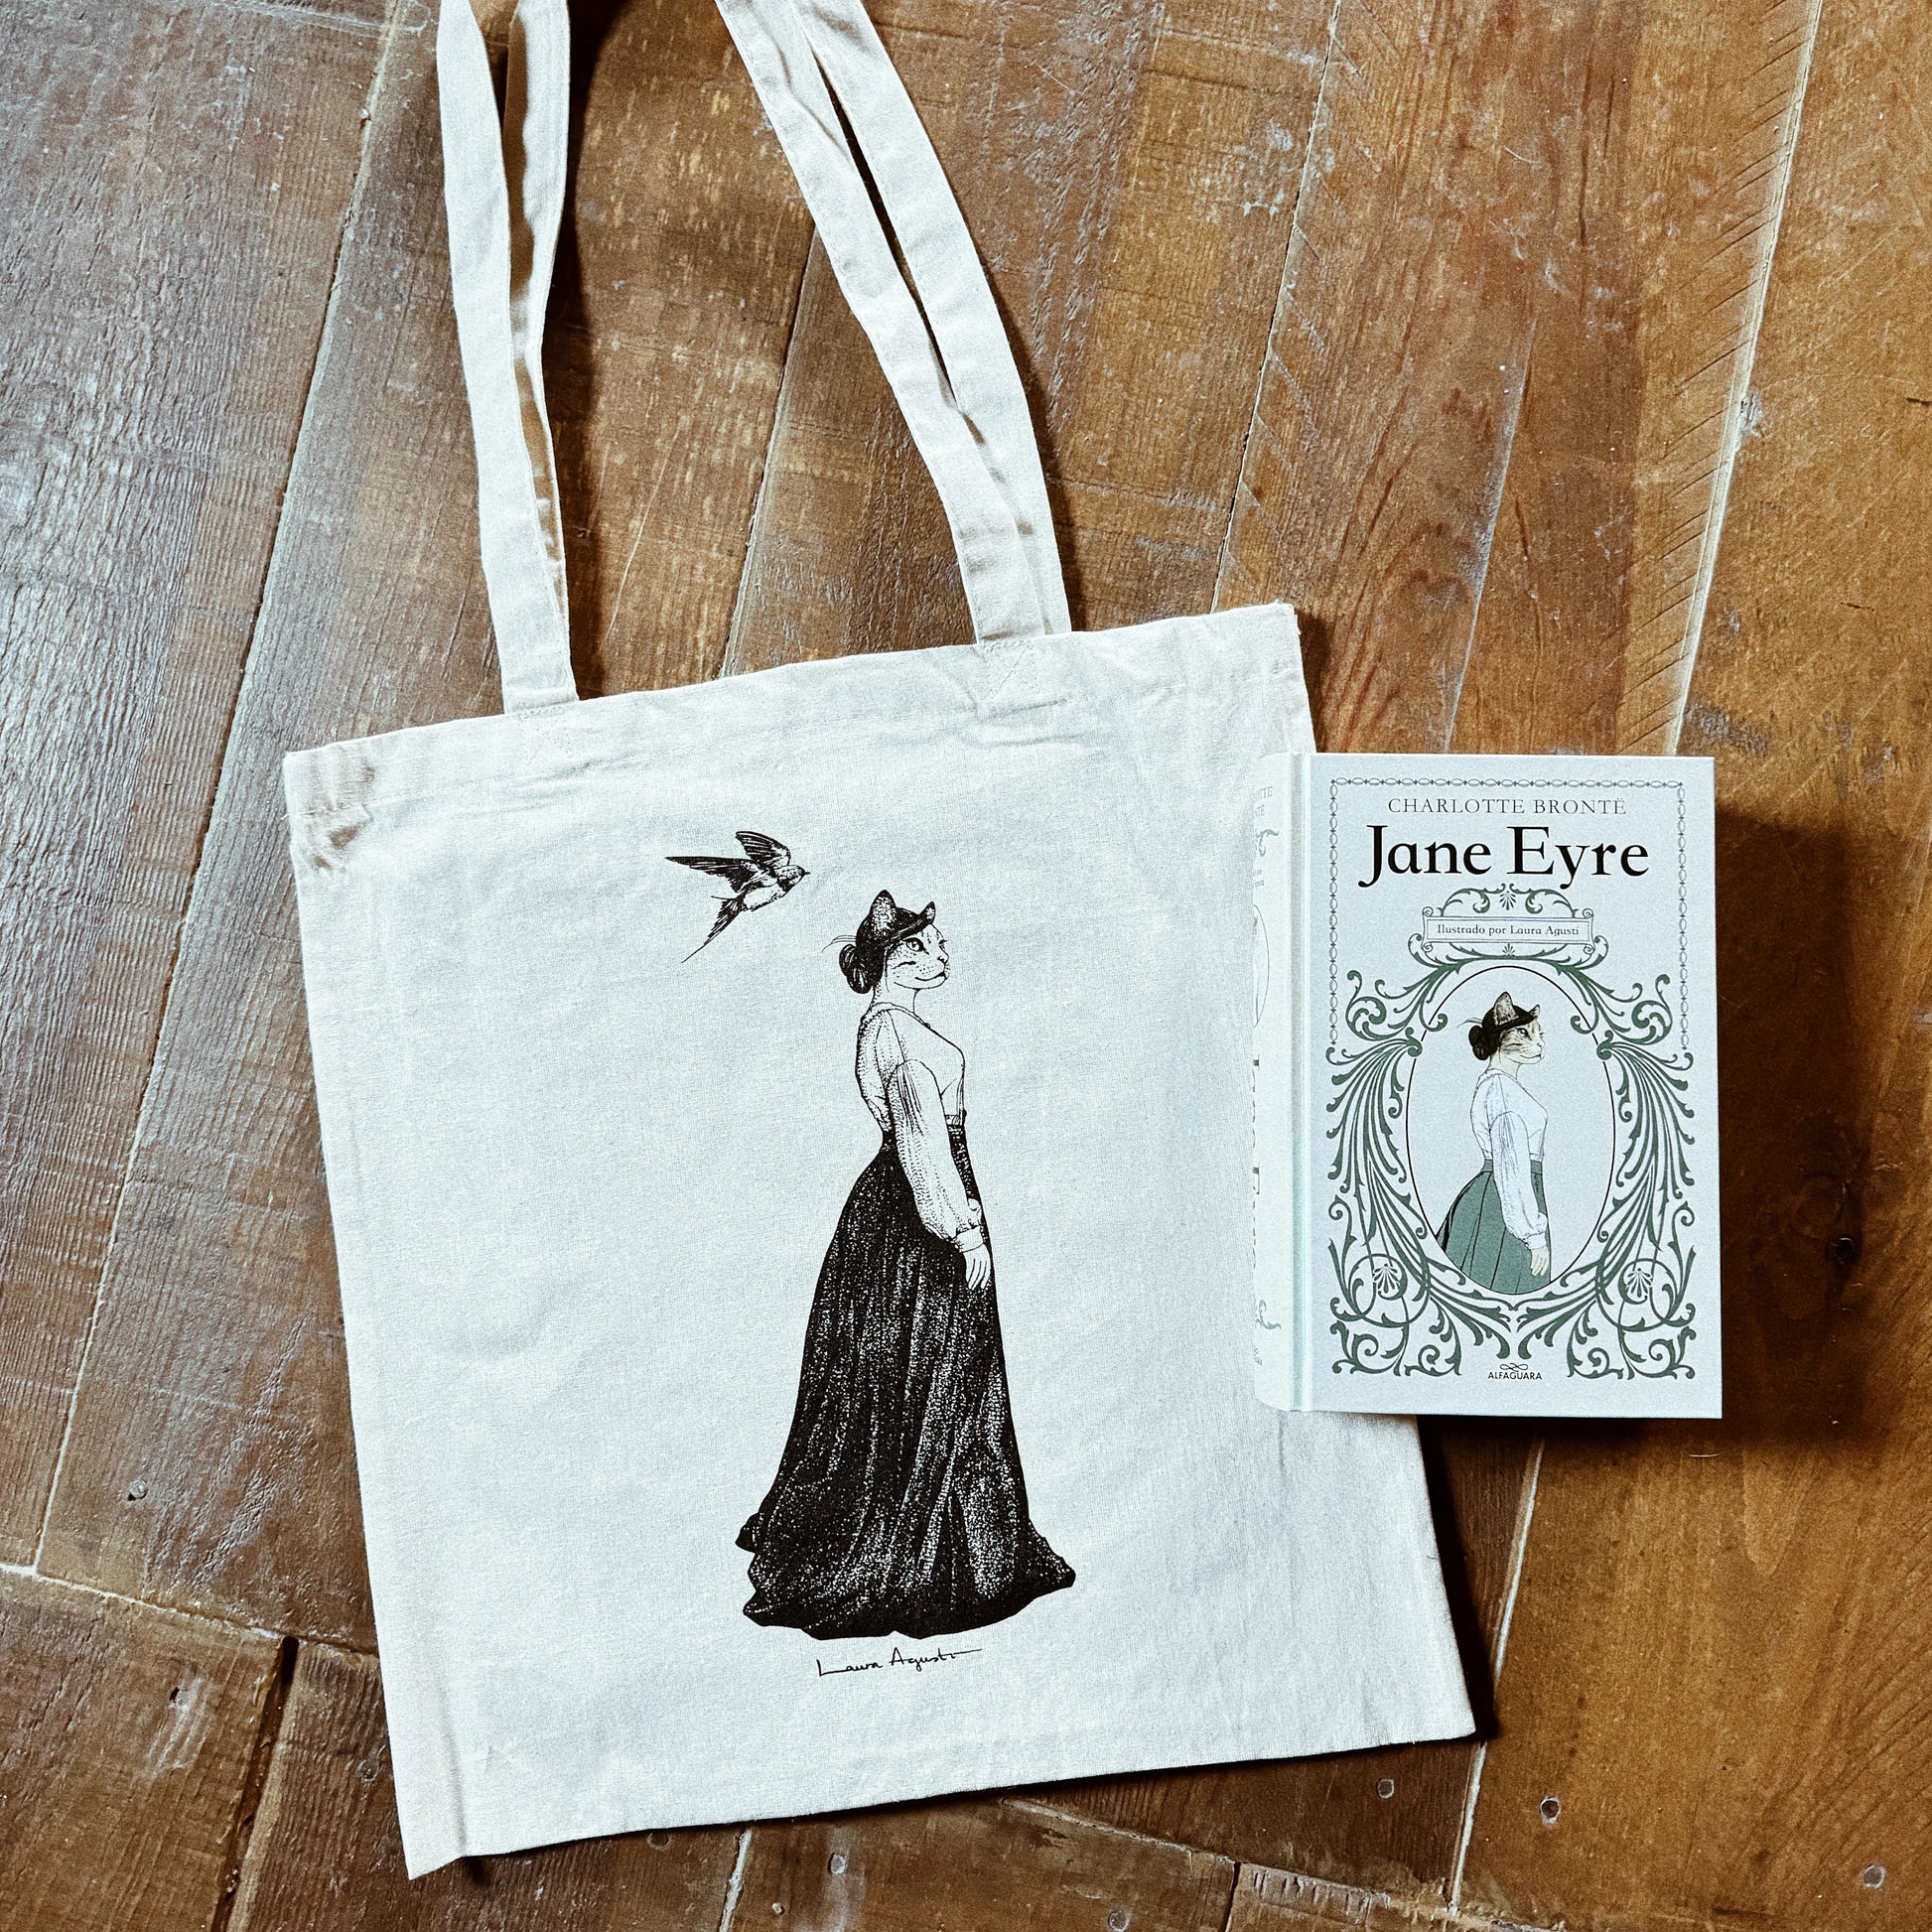 Bolsa de tela cruda con una mujer gata vestida de época y una golondrina sobrevolando su cabeza junto al libro Jane Eyre, de Charlotte Brontë ilustrado por Laura Agustí